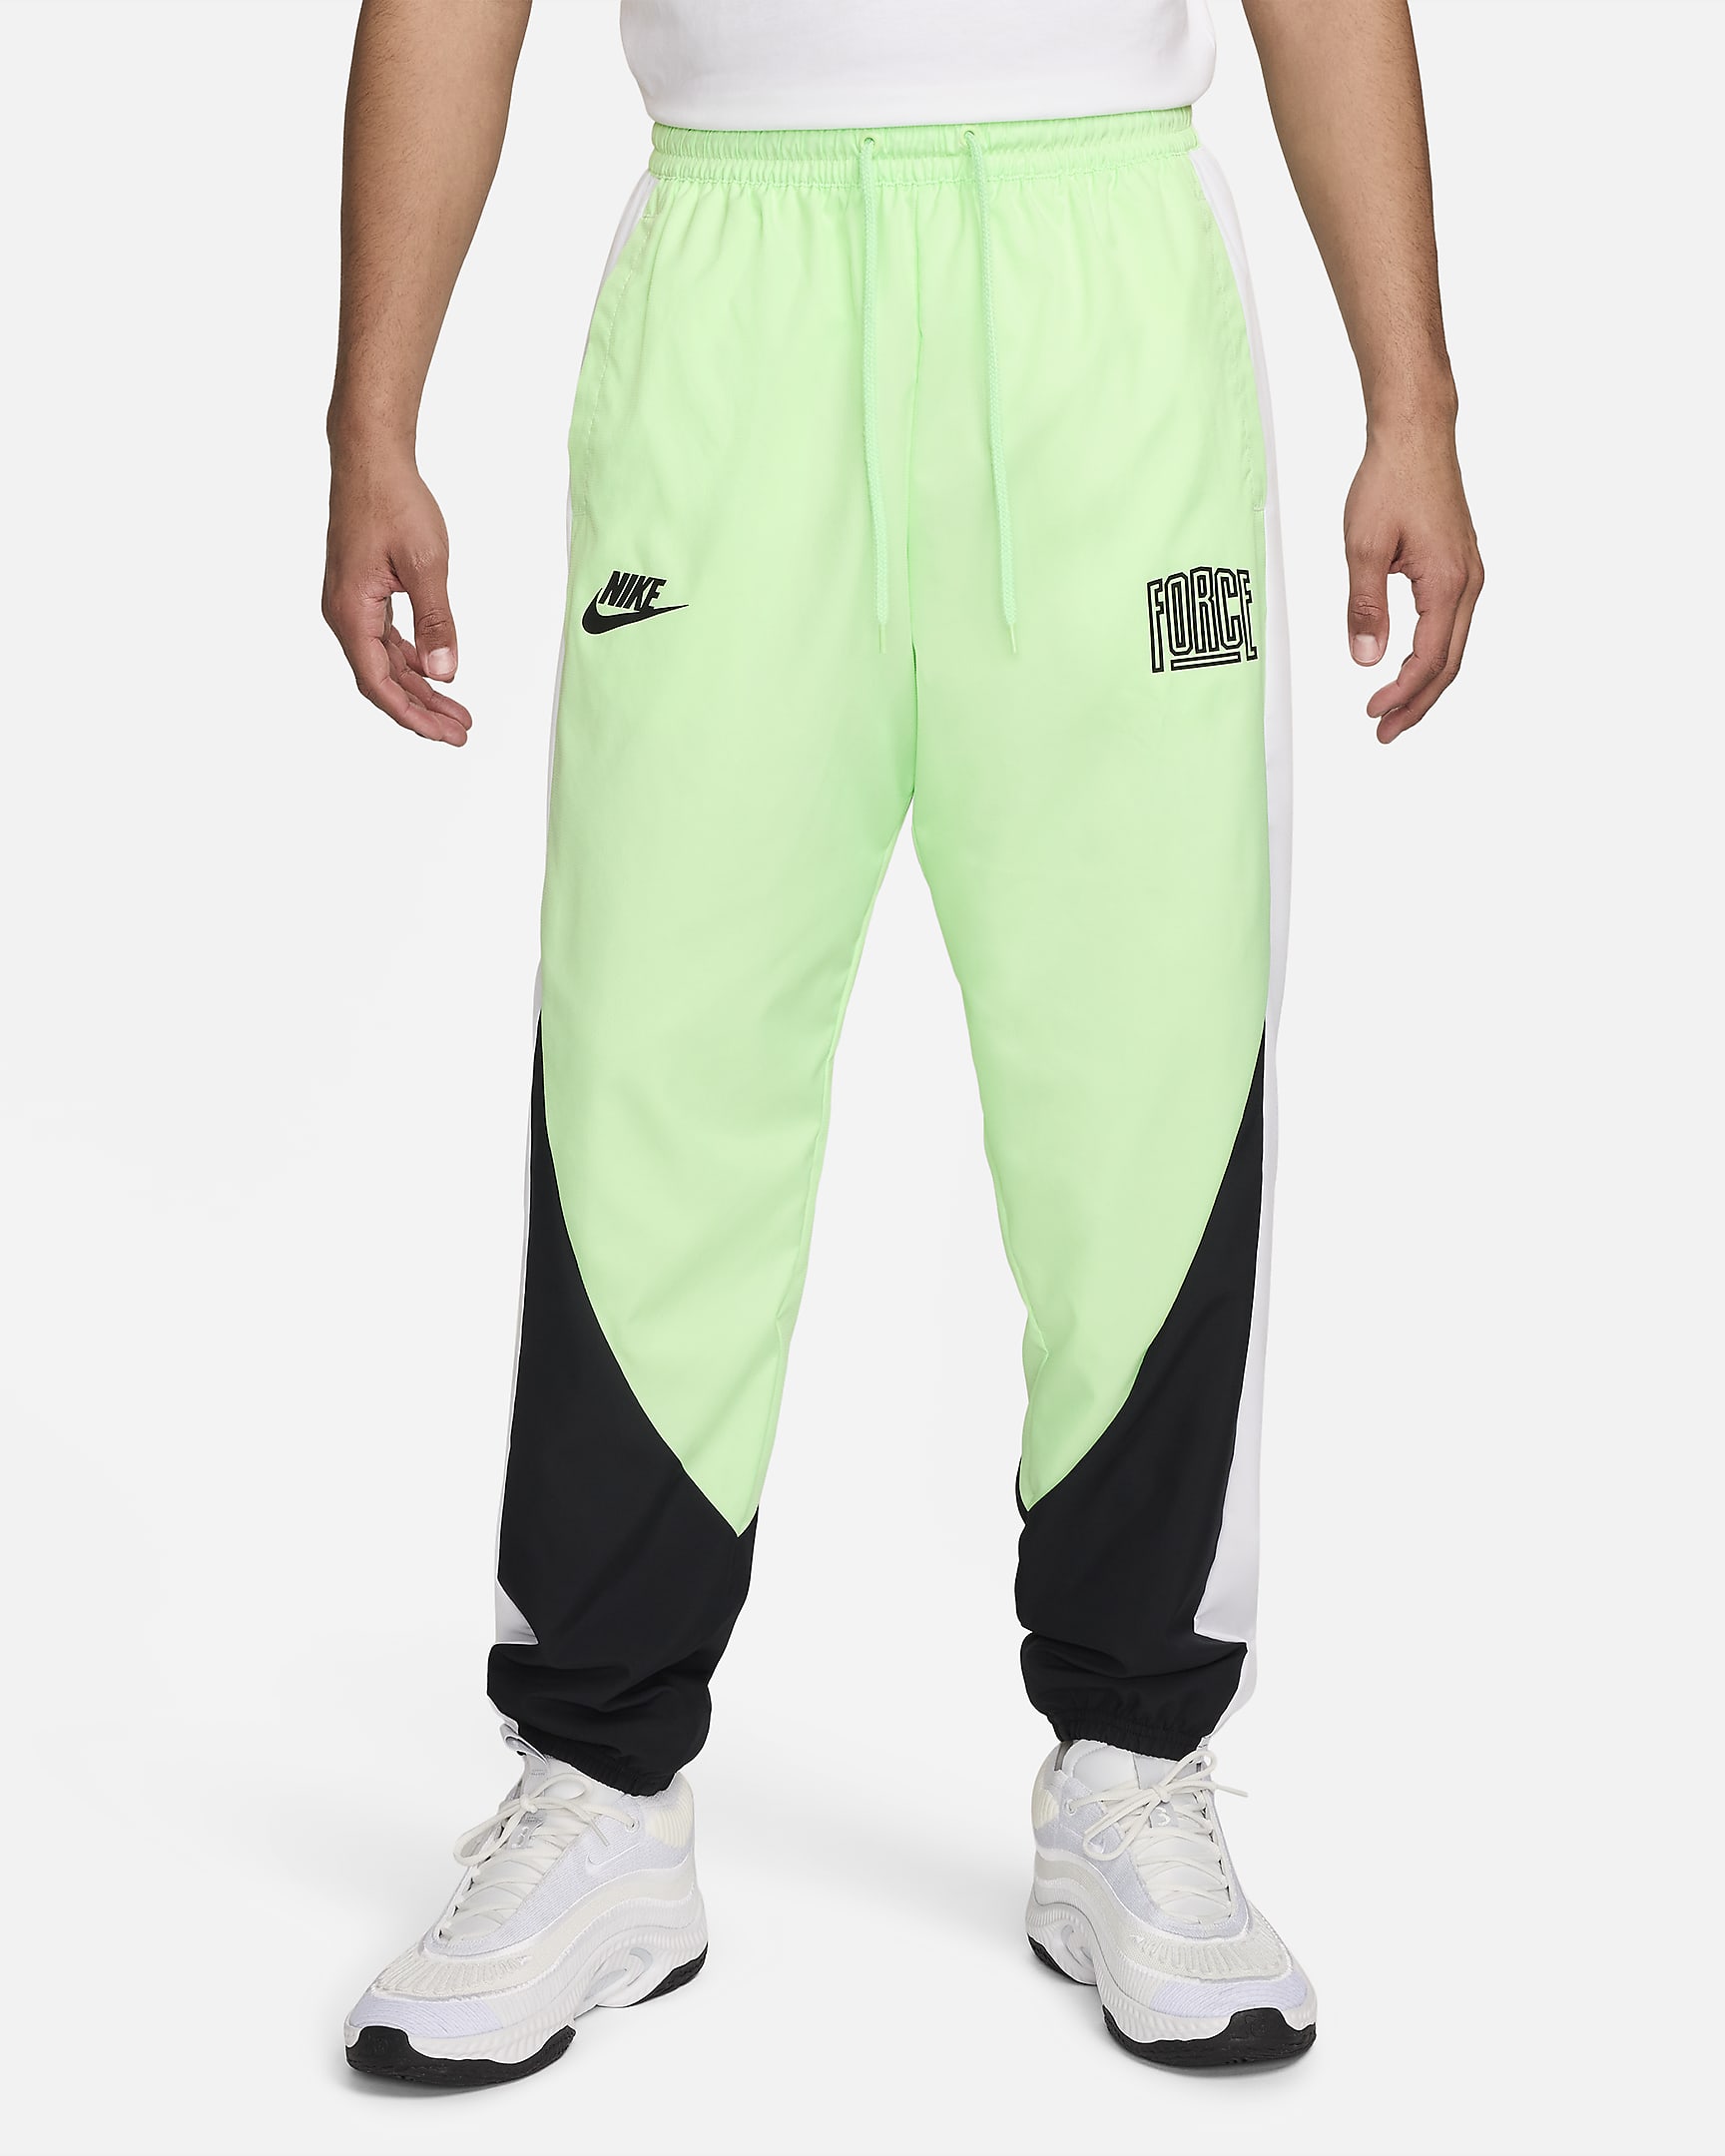 Calças de basquetebol Nike Starting 5 para homem - Verde Vapor/Preto/Branco/Branco